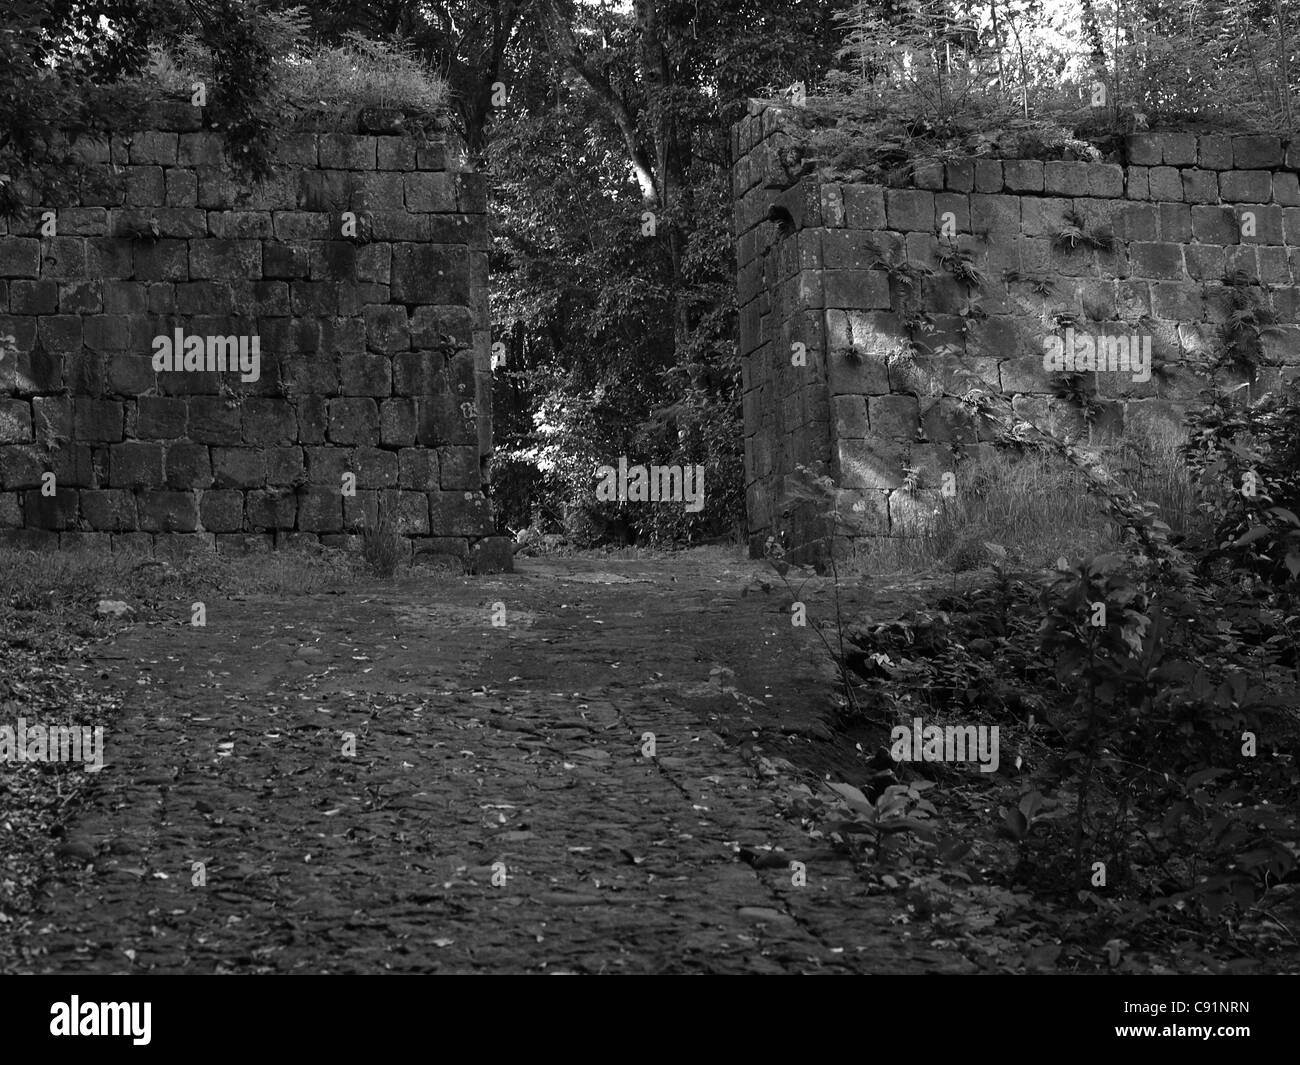 Un mur en pierre à l'entrée de fort Shirley, Cabrits National Park, Commonwealth de Dominique, Antilles, Caraïbes. Banque D'Images